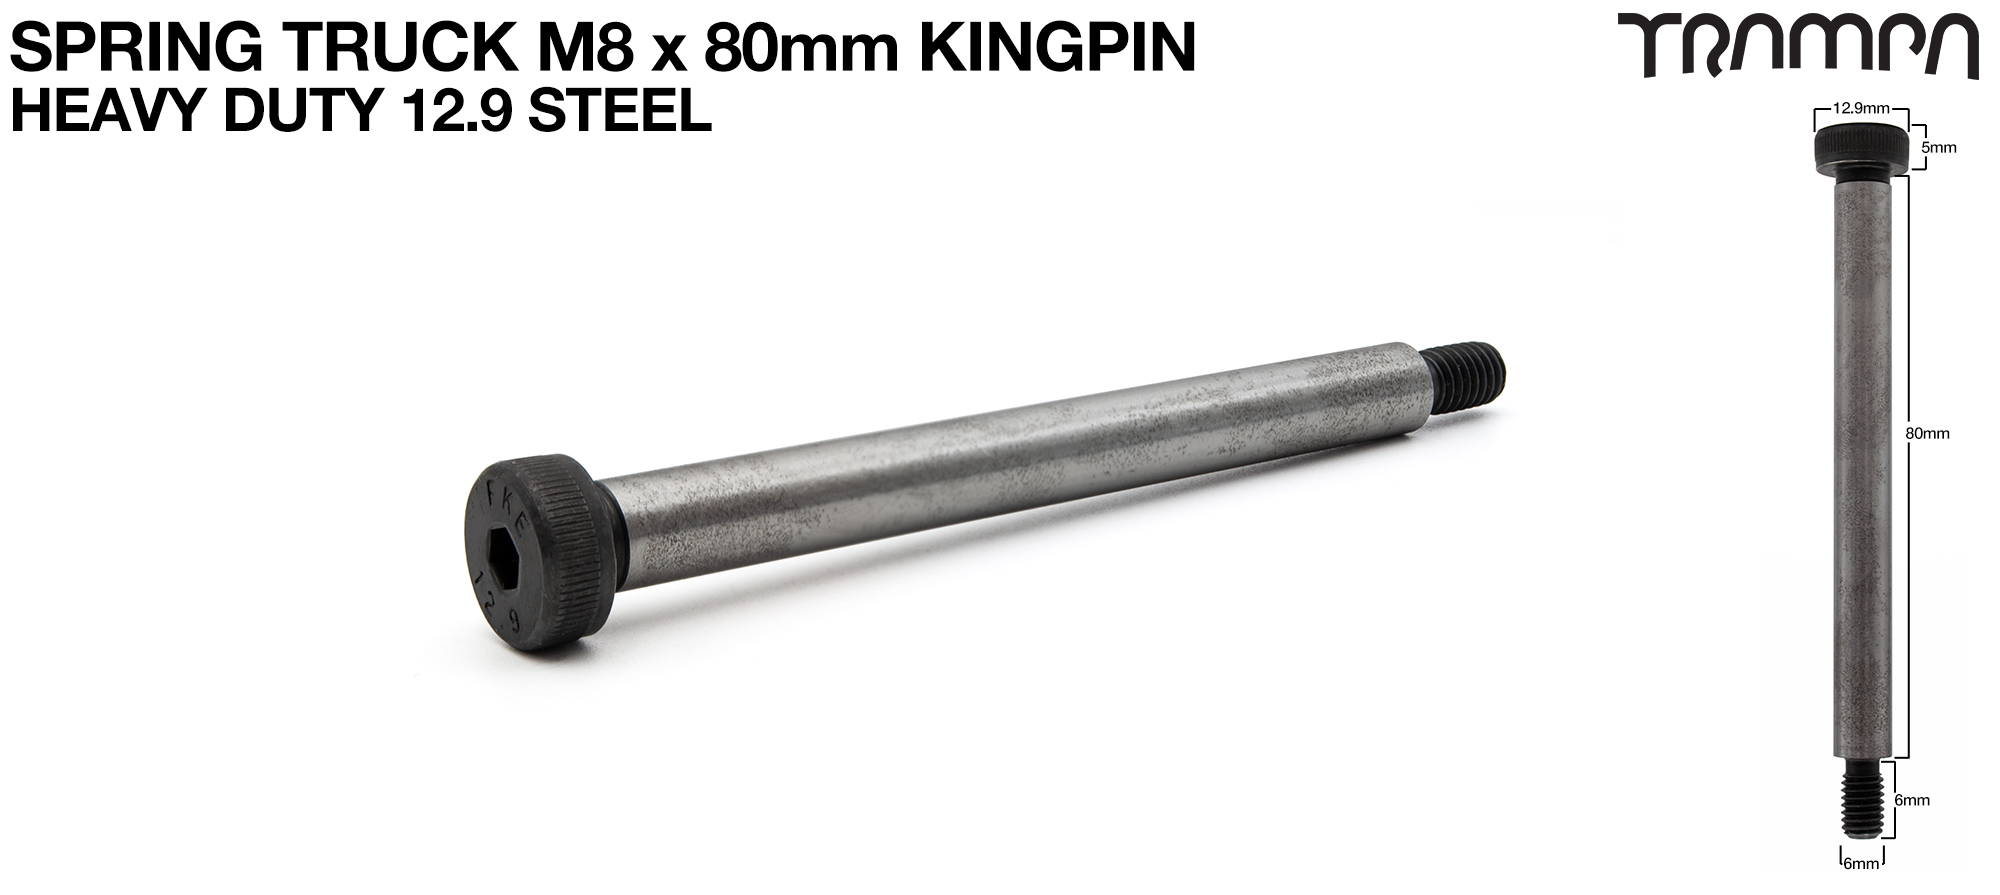 STEEL Kingpin M6x 8mm x 80mm for Spring Truck - Heavy Duty 12.9 Steel